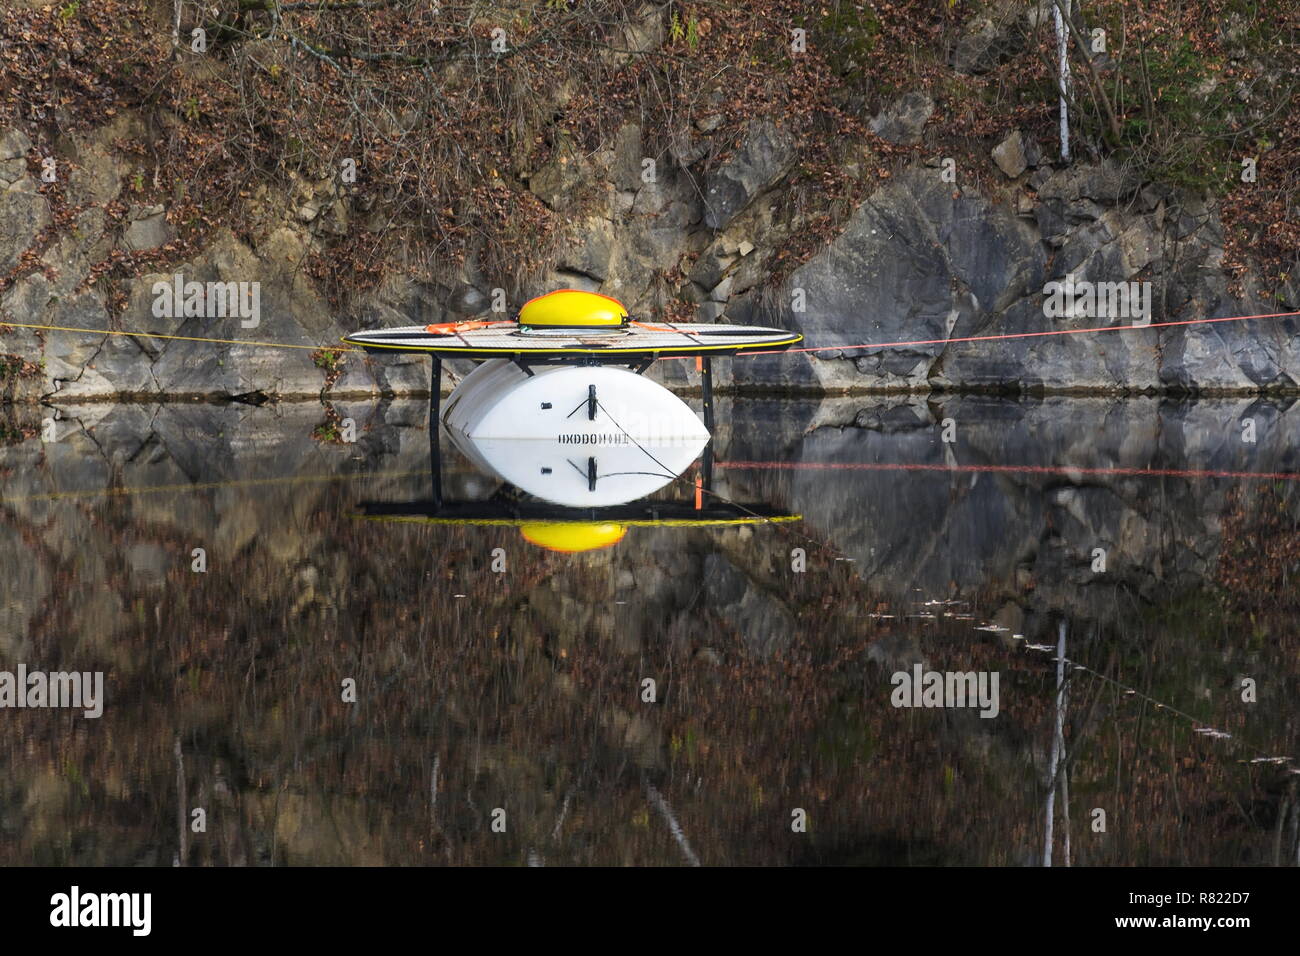 Laboratoire de recherche sous l'Hydronaut et station de formation pour la simulation de missions spatiales flottant sur la surface de l'eau, carrière, Jesenny Czech Republ Banque D'Images